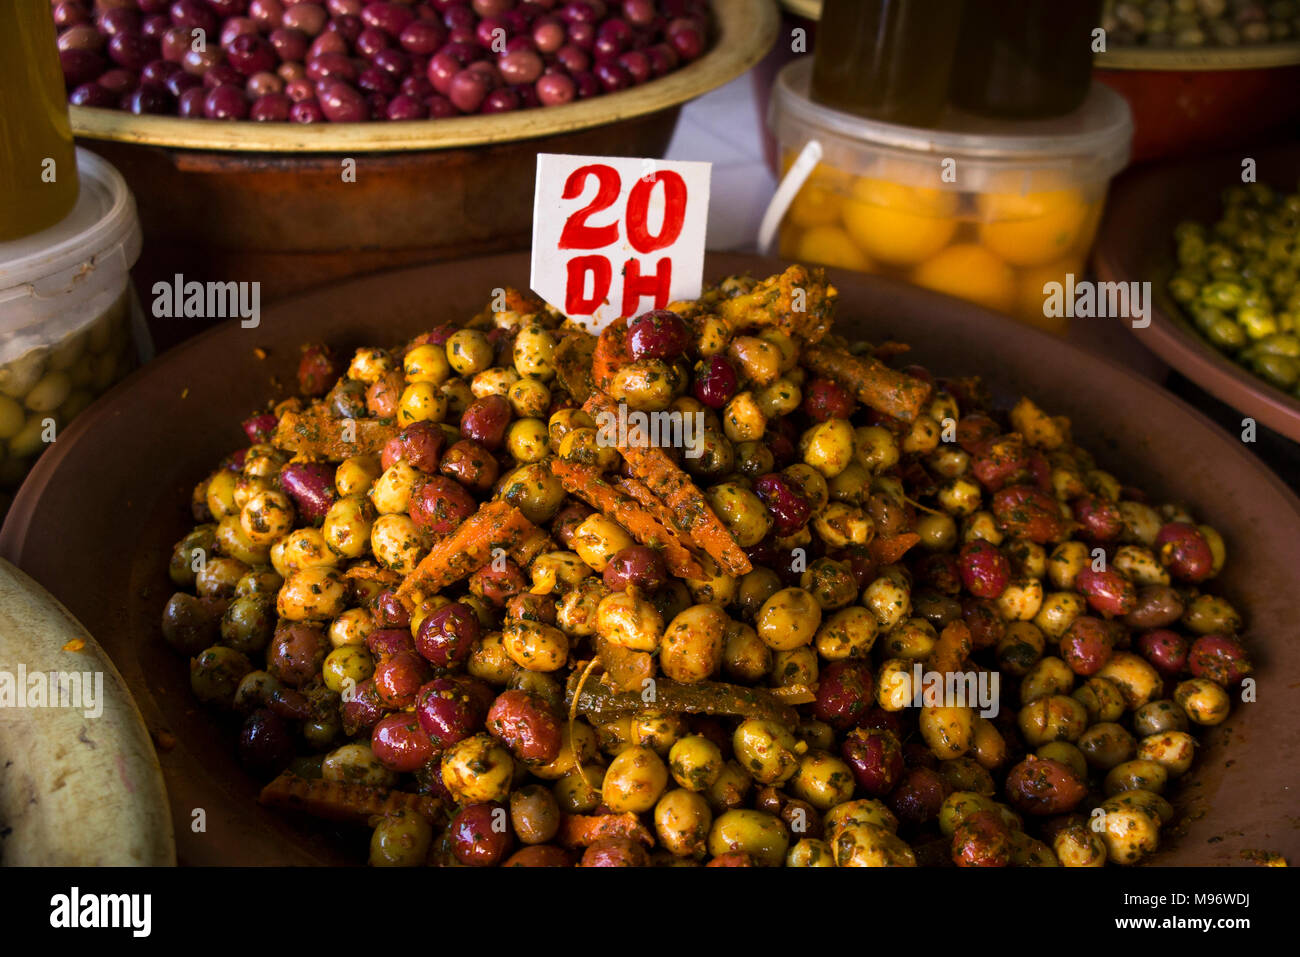 Il Marocco, Casablanca, Quartier Habous Souk, negozio di alimentari preparate le olive sul display Foto Stock